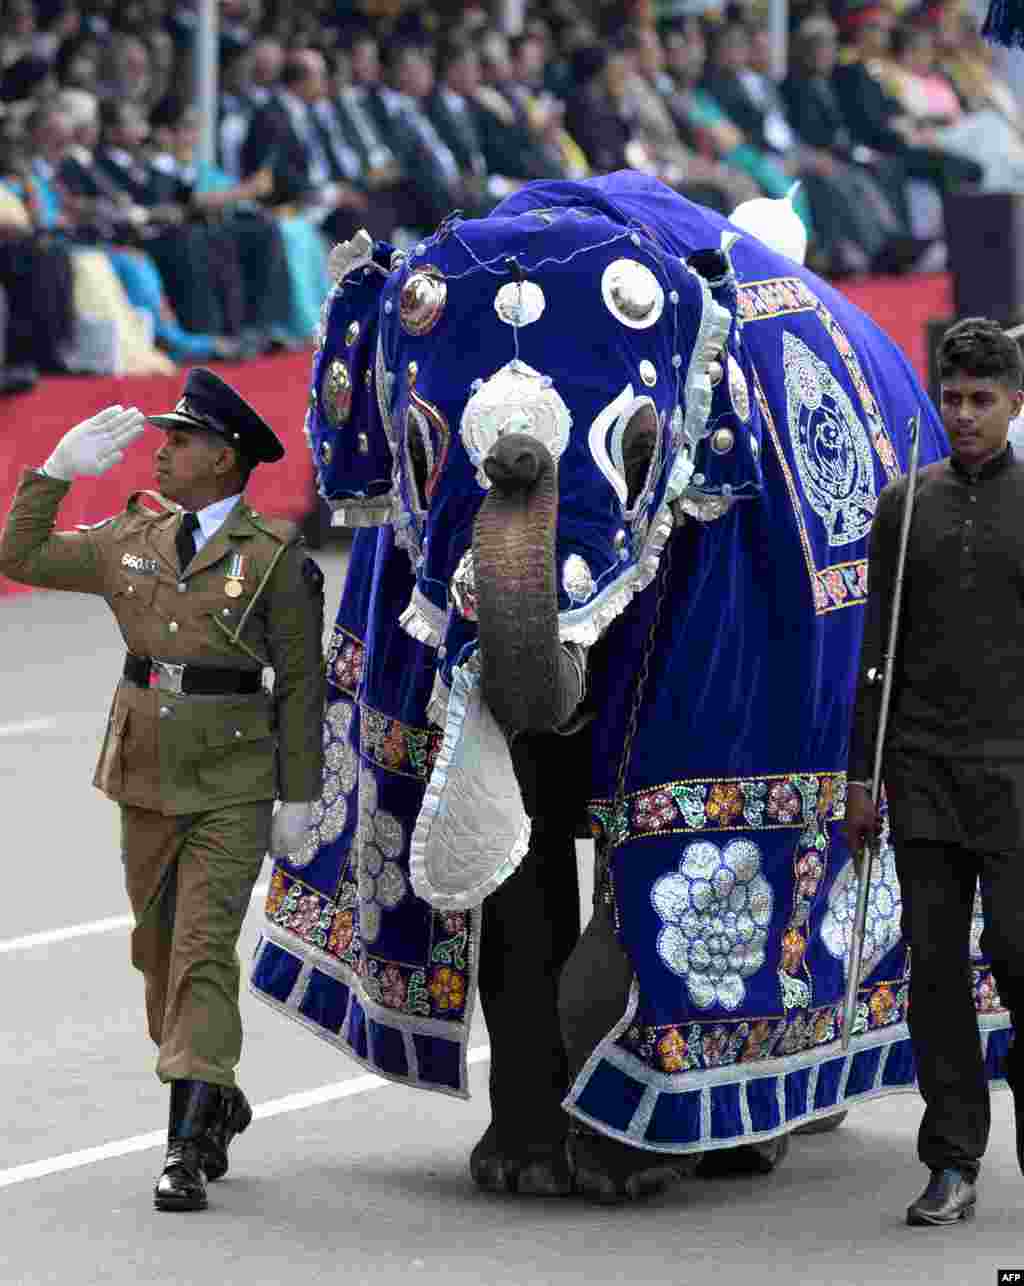 스리랑카 콜롬보에서 열린 제71주년 독립기념일 행사에서 군인이 새끼 코끼리와 함께 행진하고 있다.